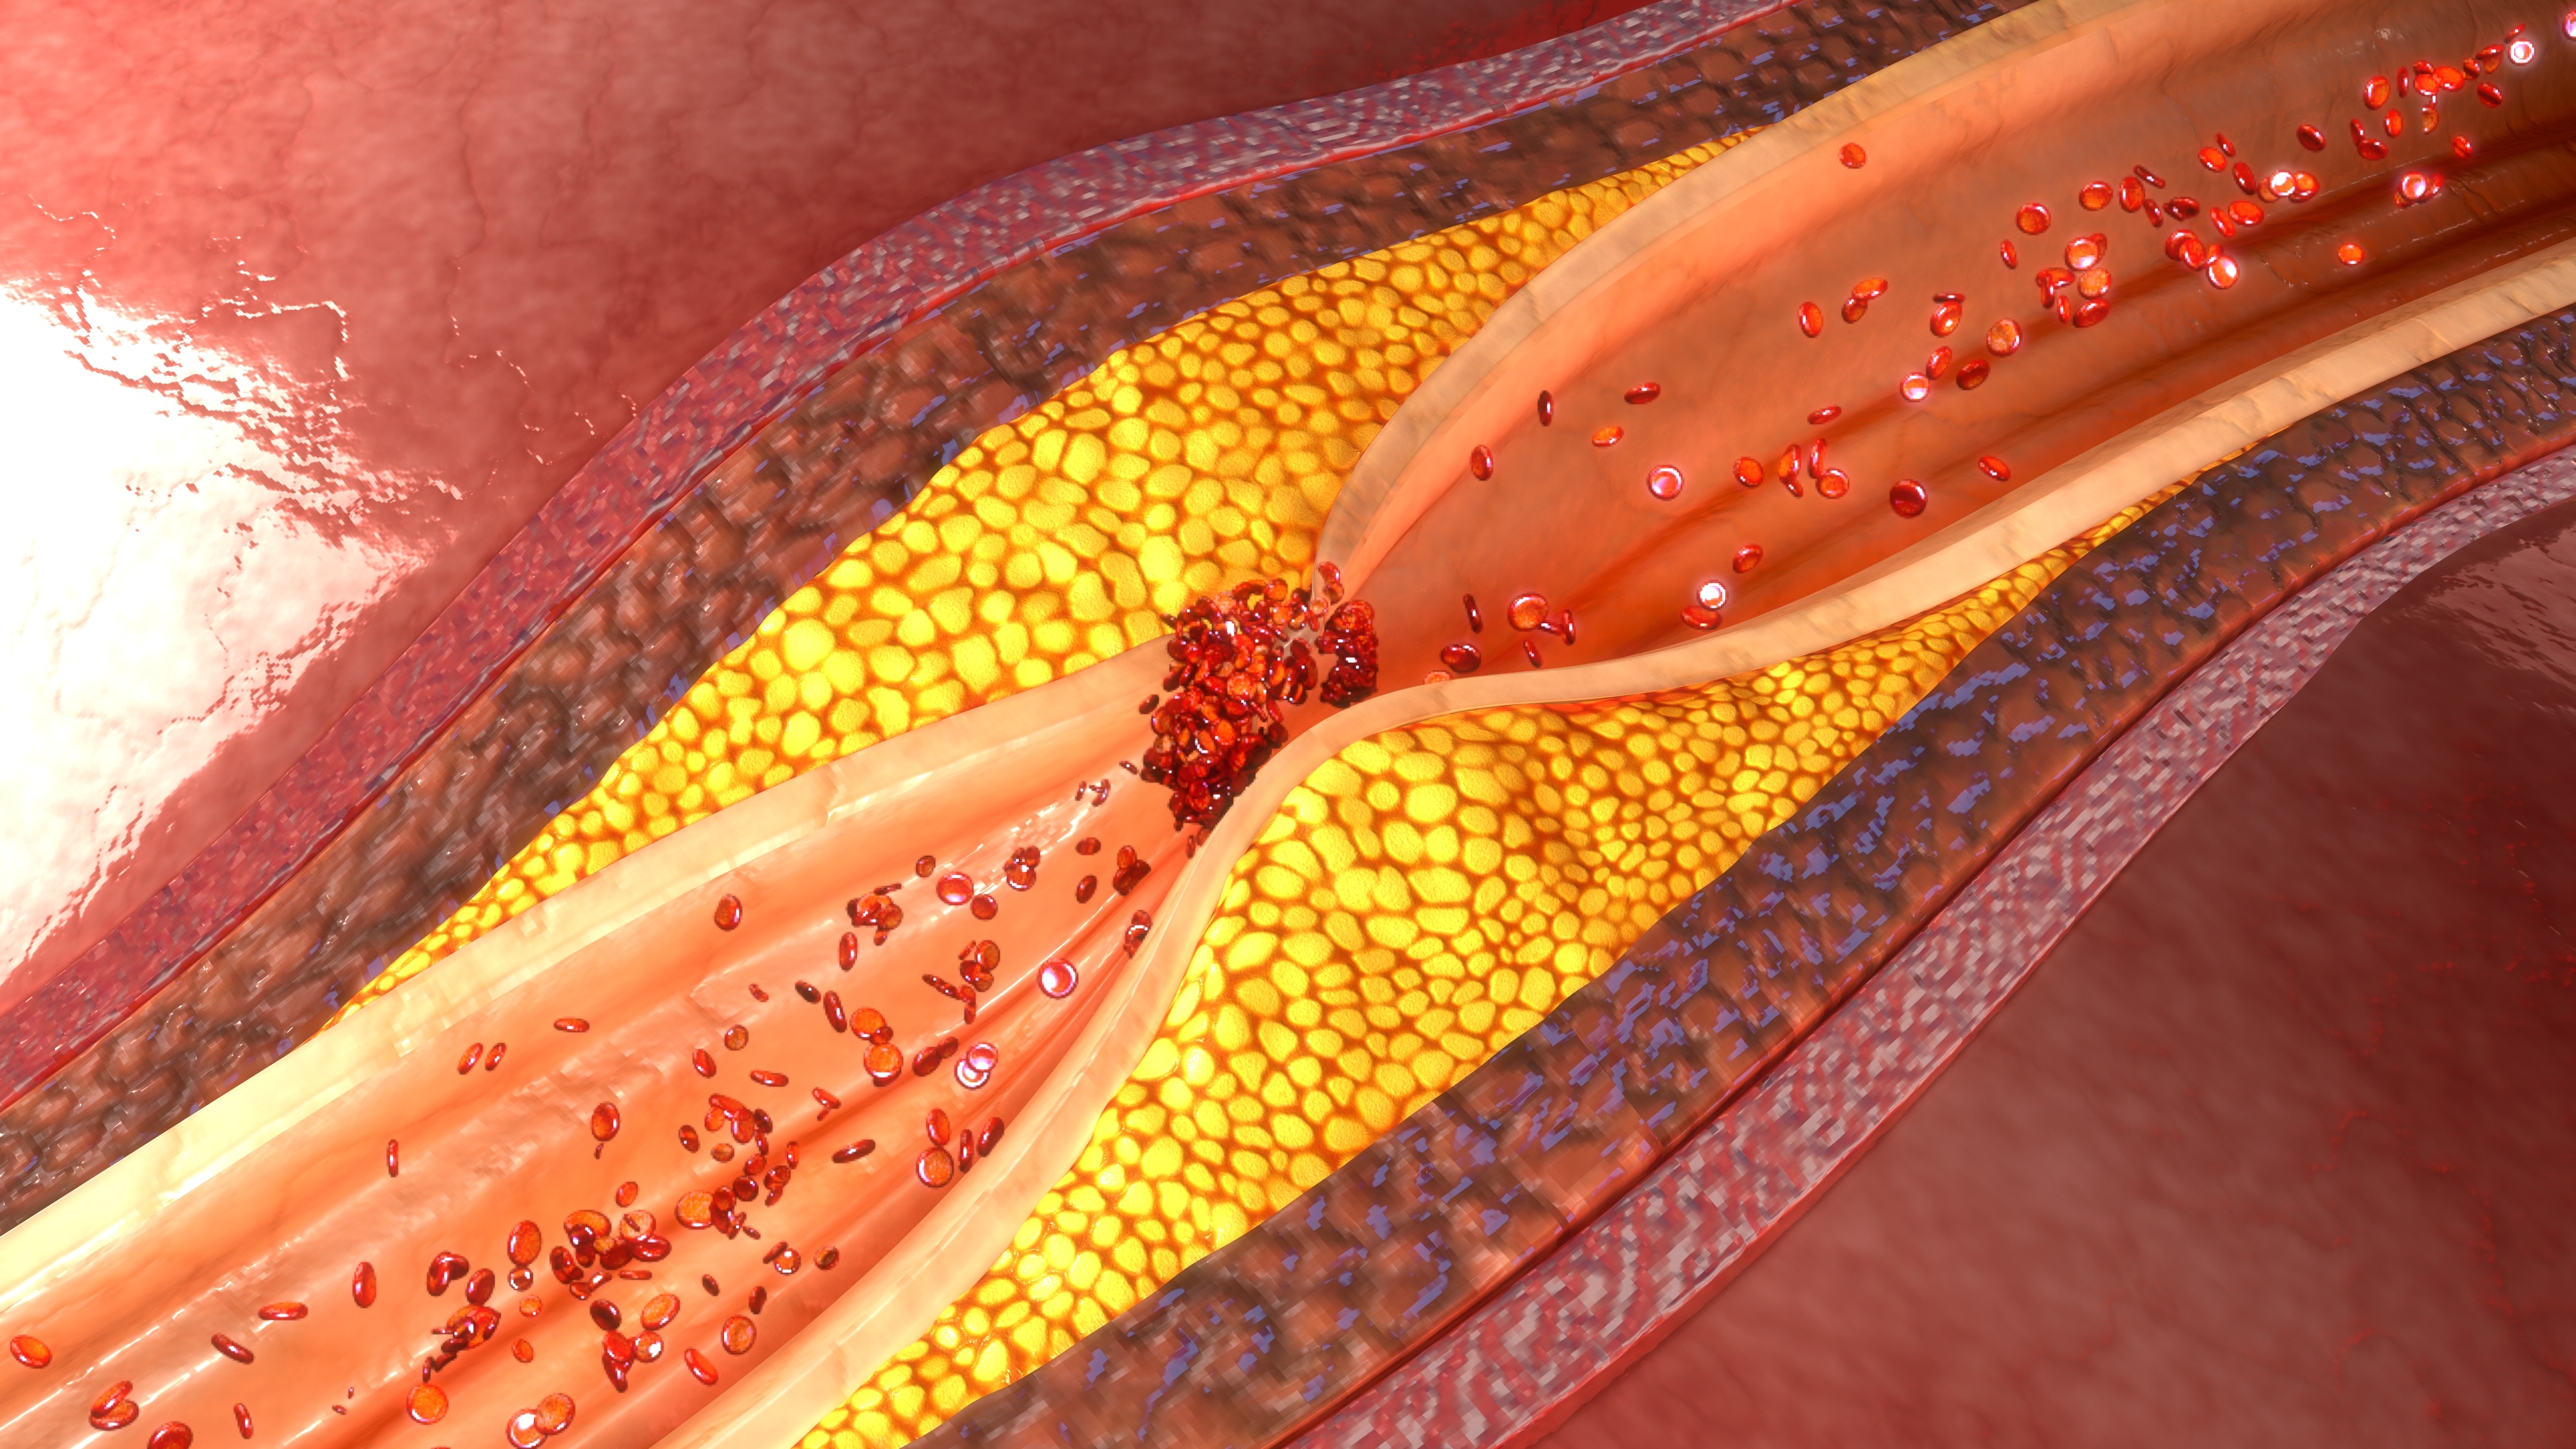 La calcification vasculaire et l’accumulation de cholestérol contribuent au développement de l’athéroscléros